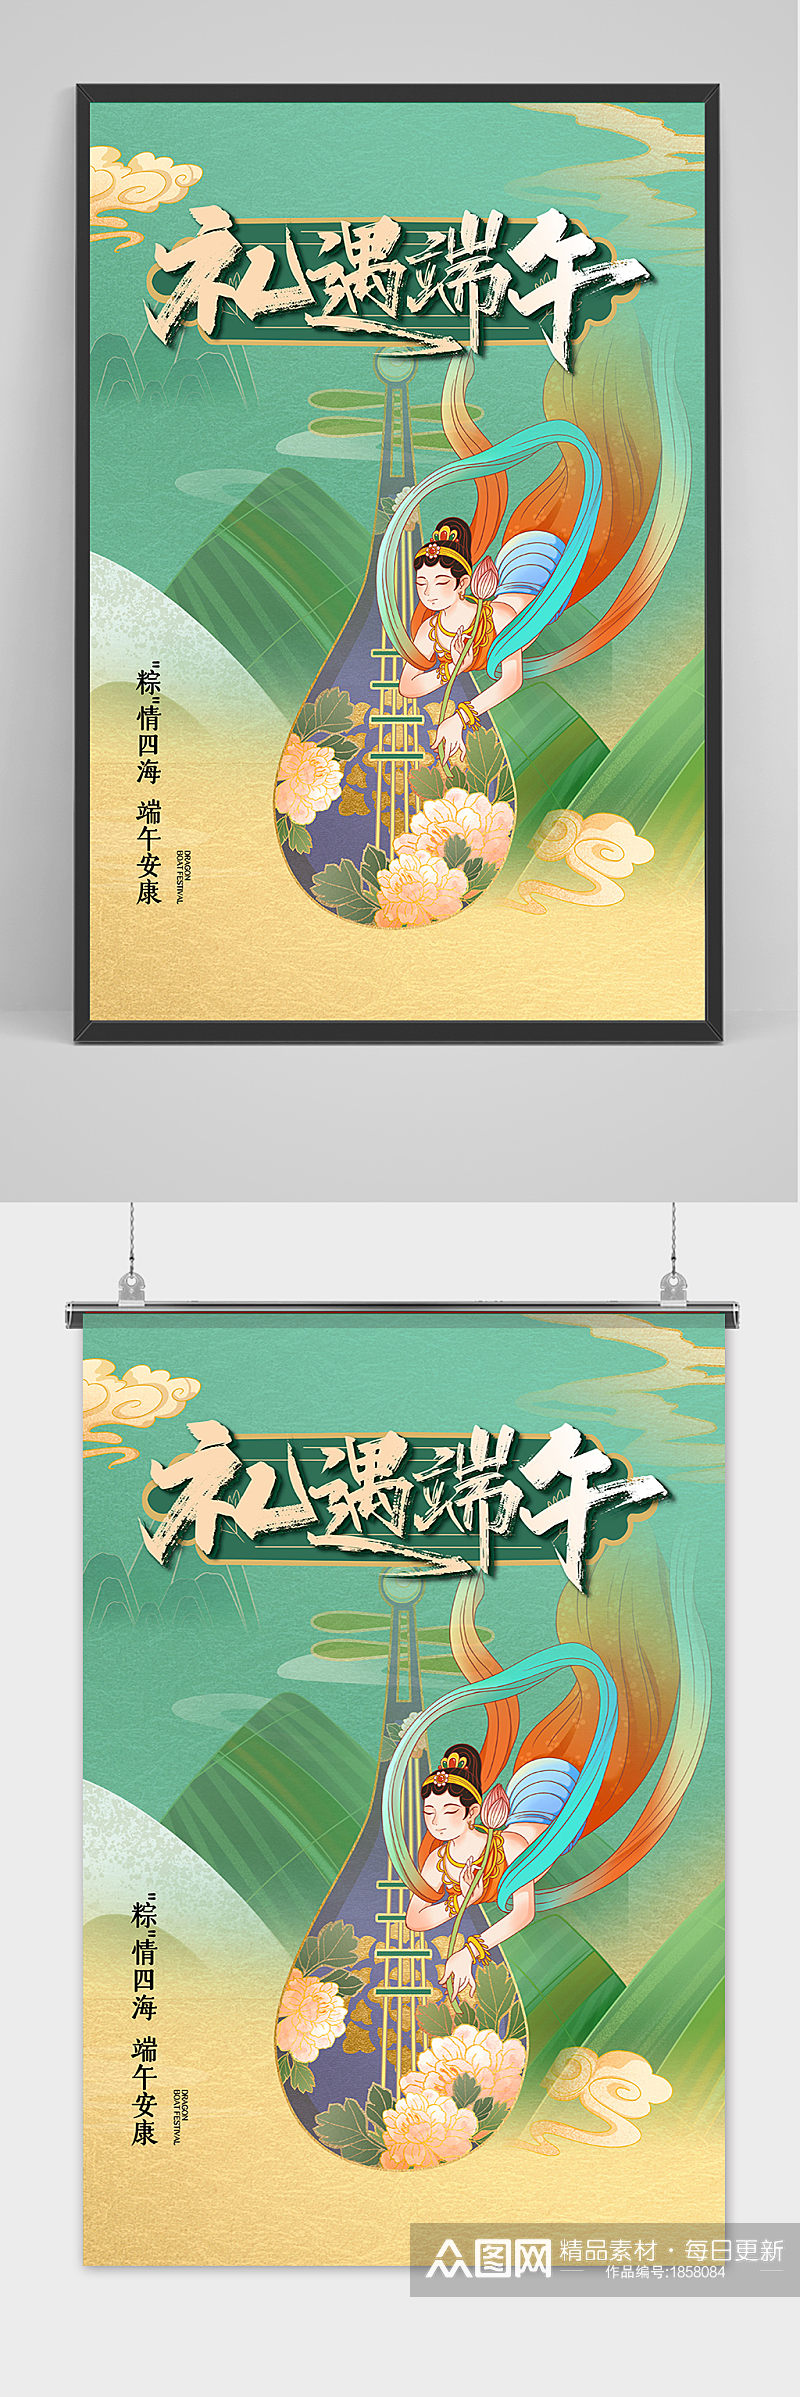 清新创意端午节中国风海报素材